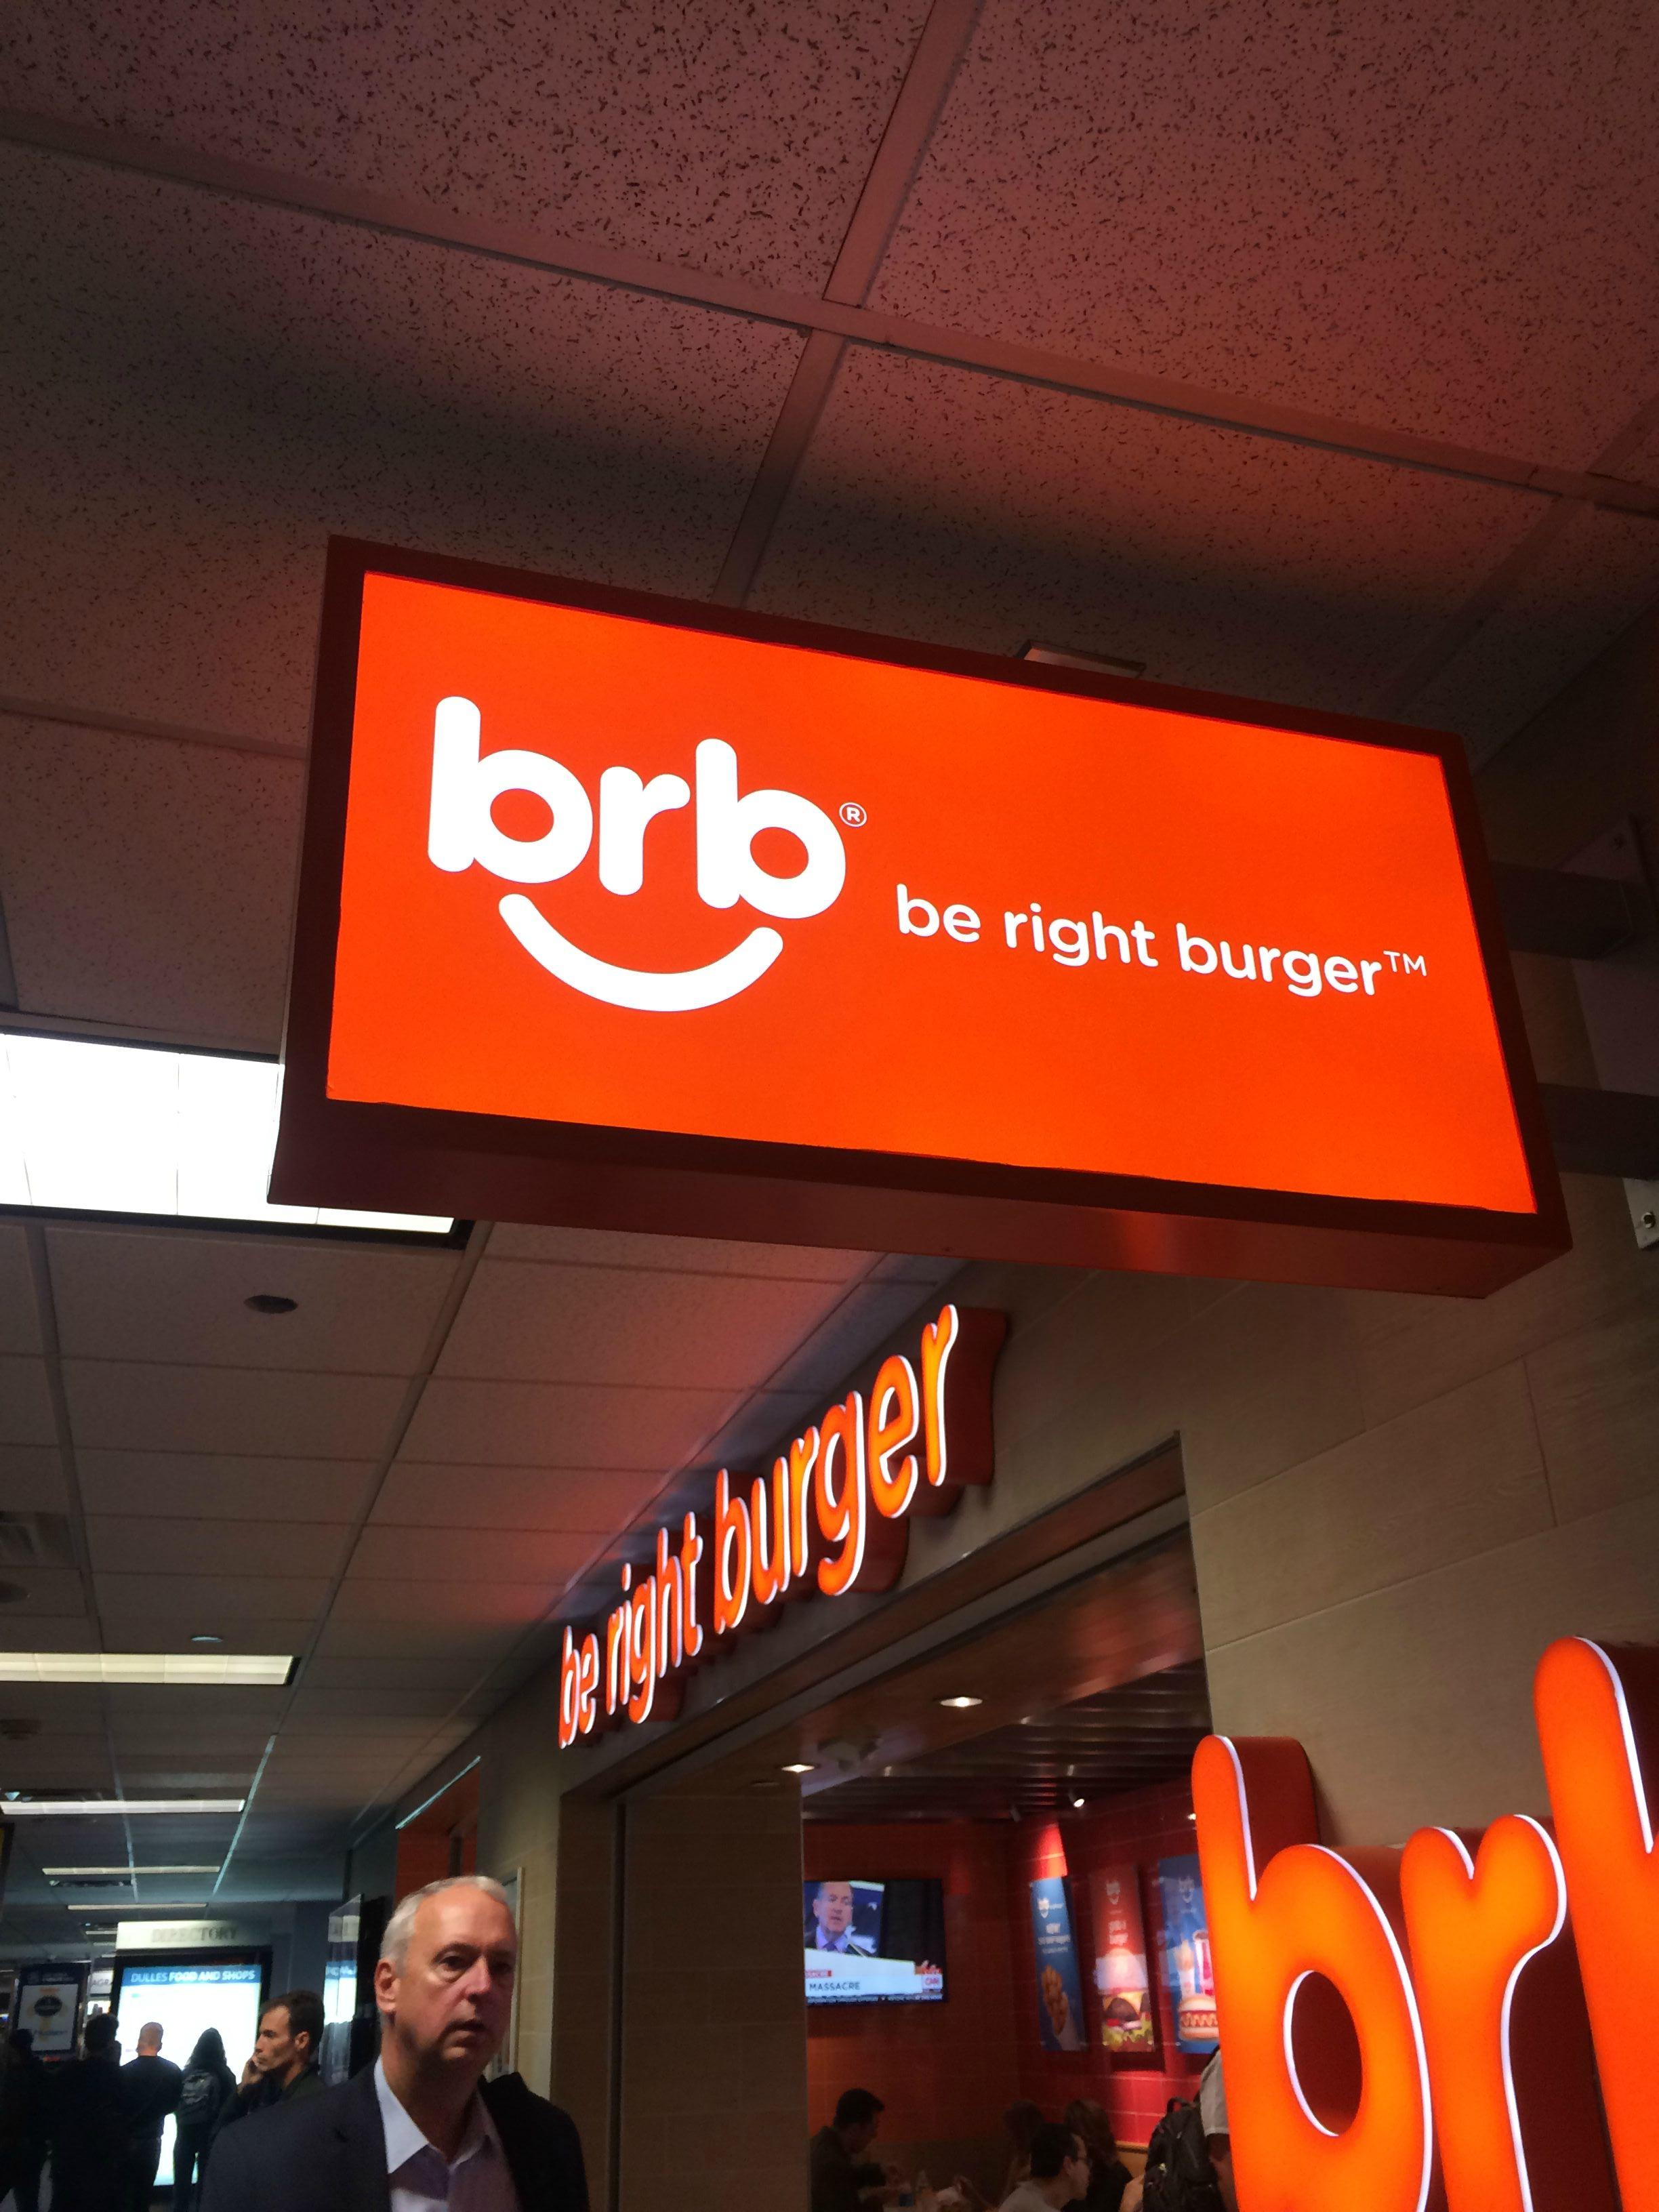 right burger - b rb be right burger be right burger 00